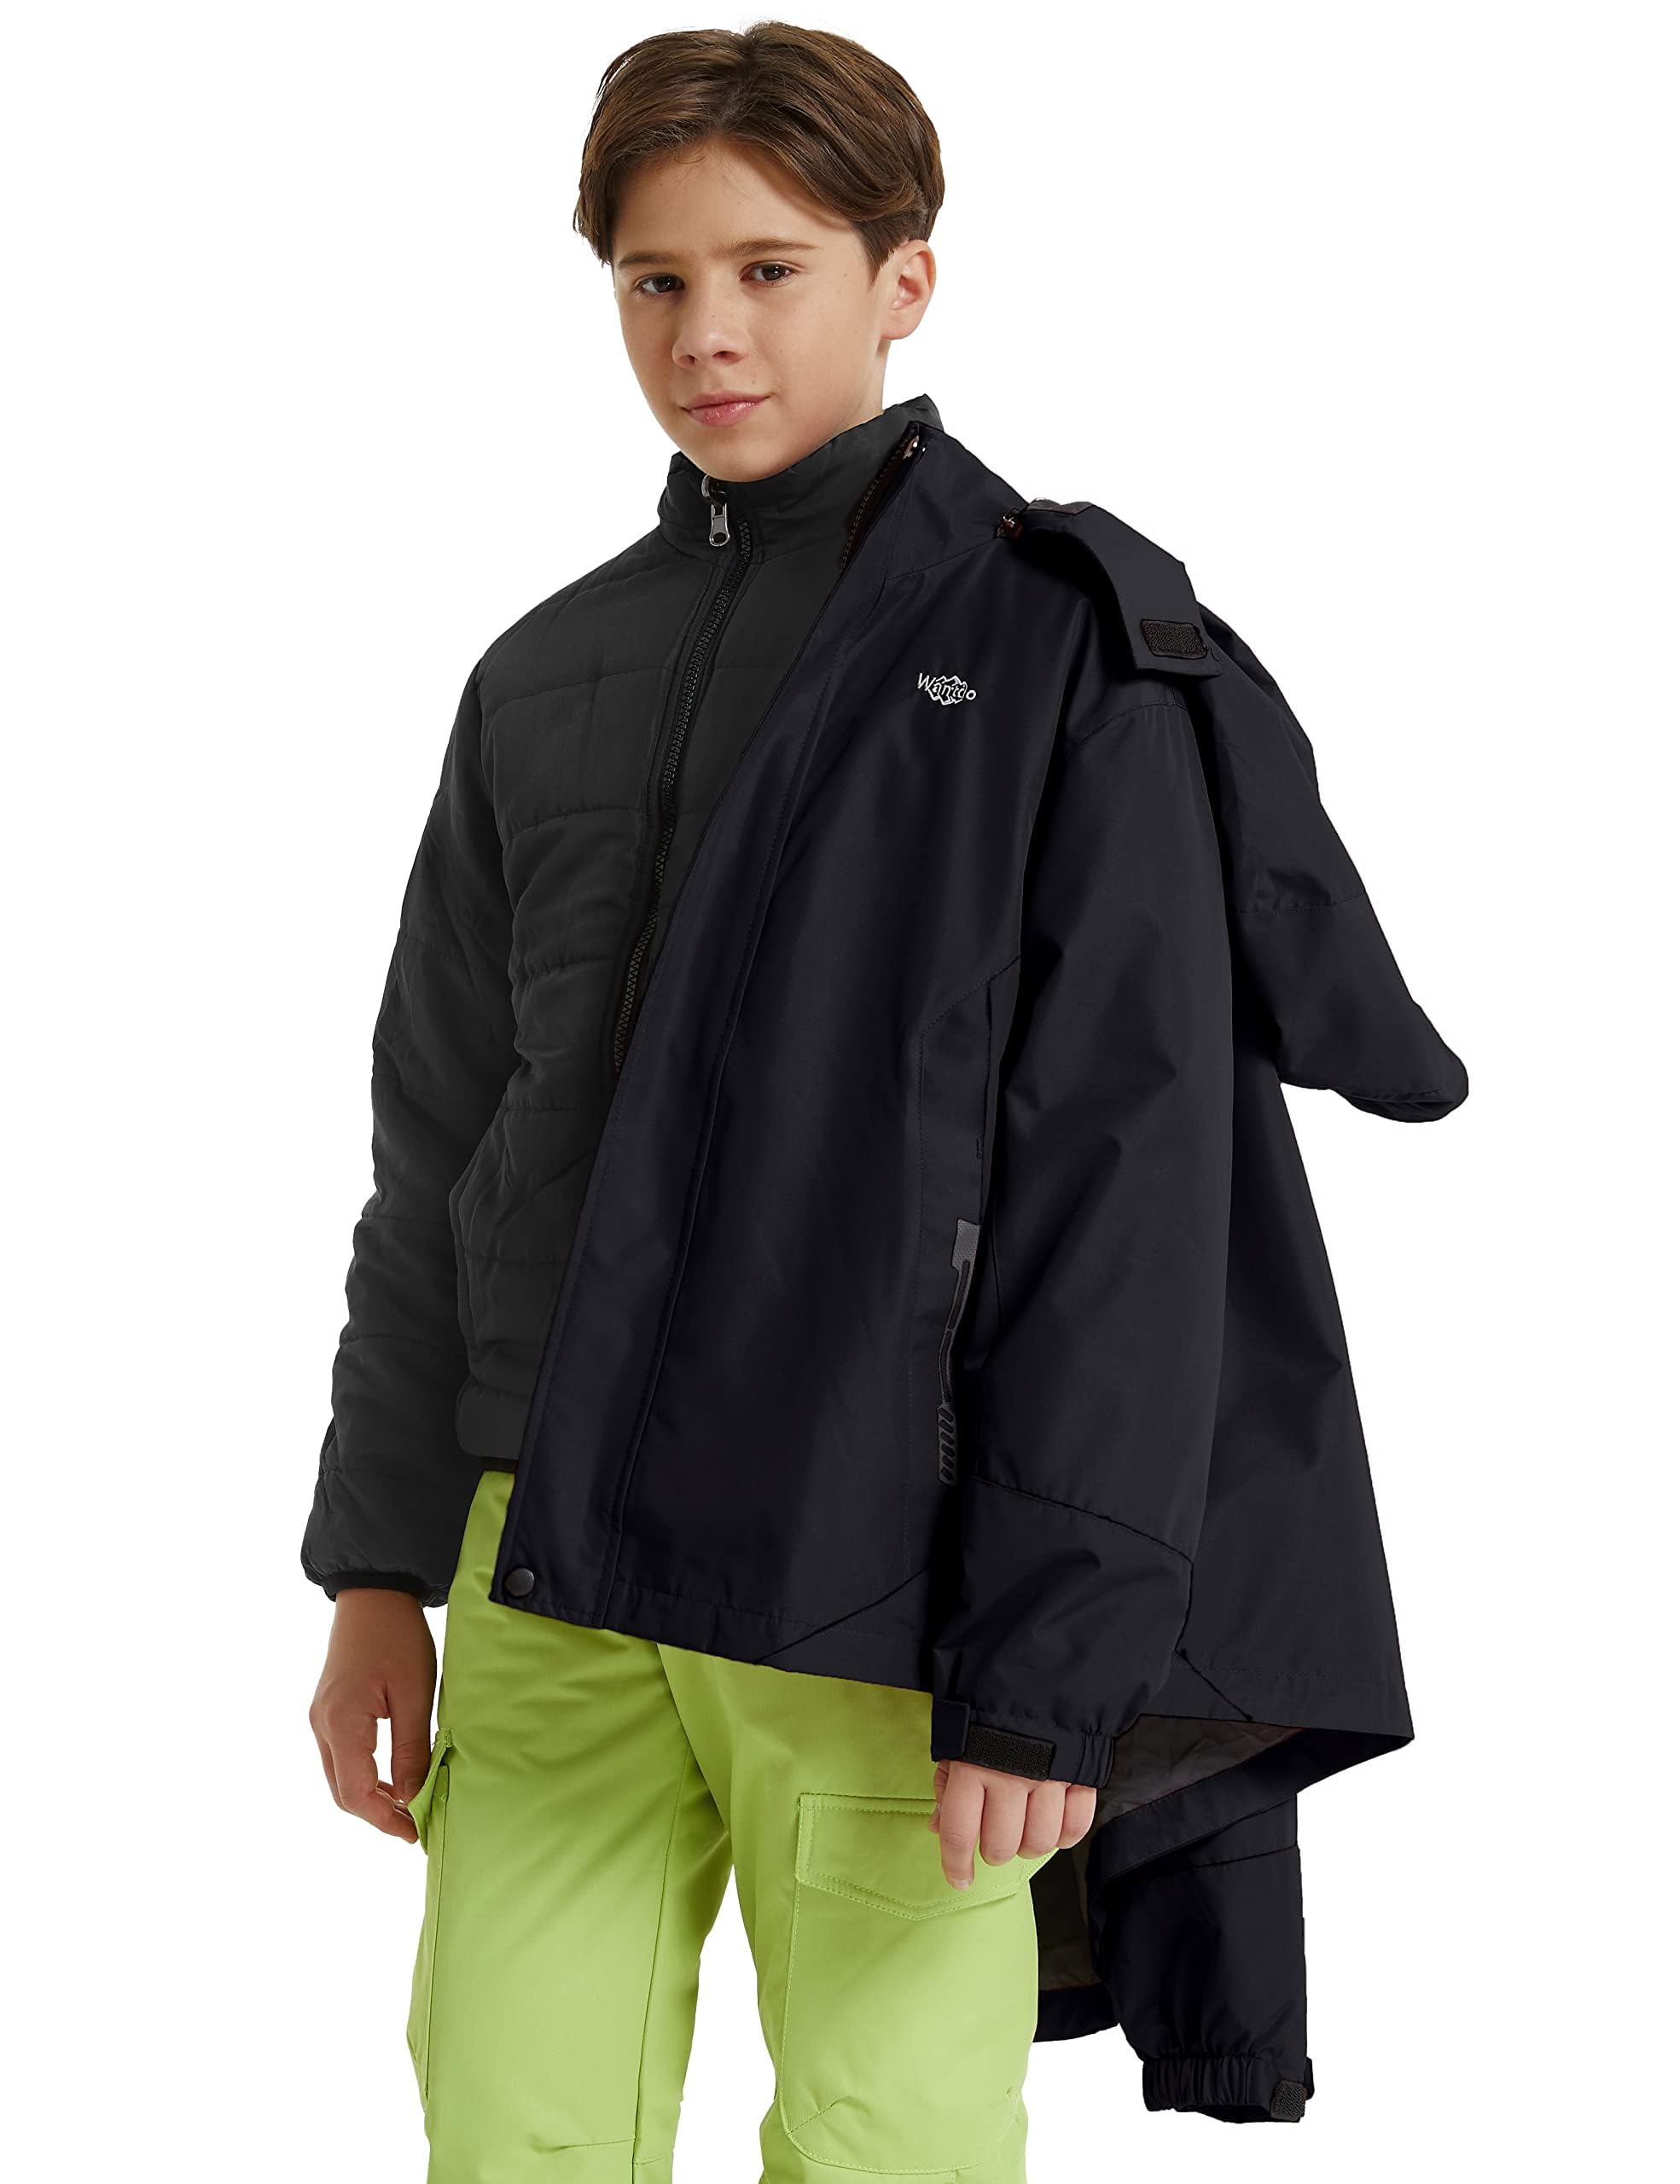 wantdo Kids Boys' 3 in 1 Snowboard Jacket Hooded Warm Winter Coat Fleece-Lined Waterproof Black 10-12